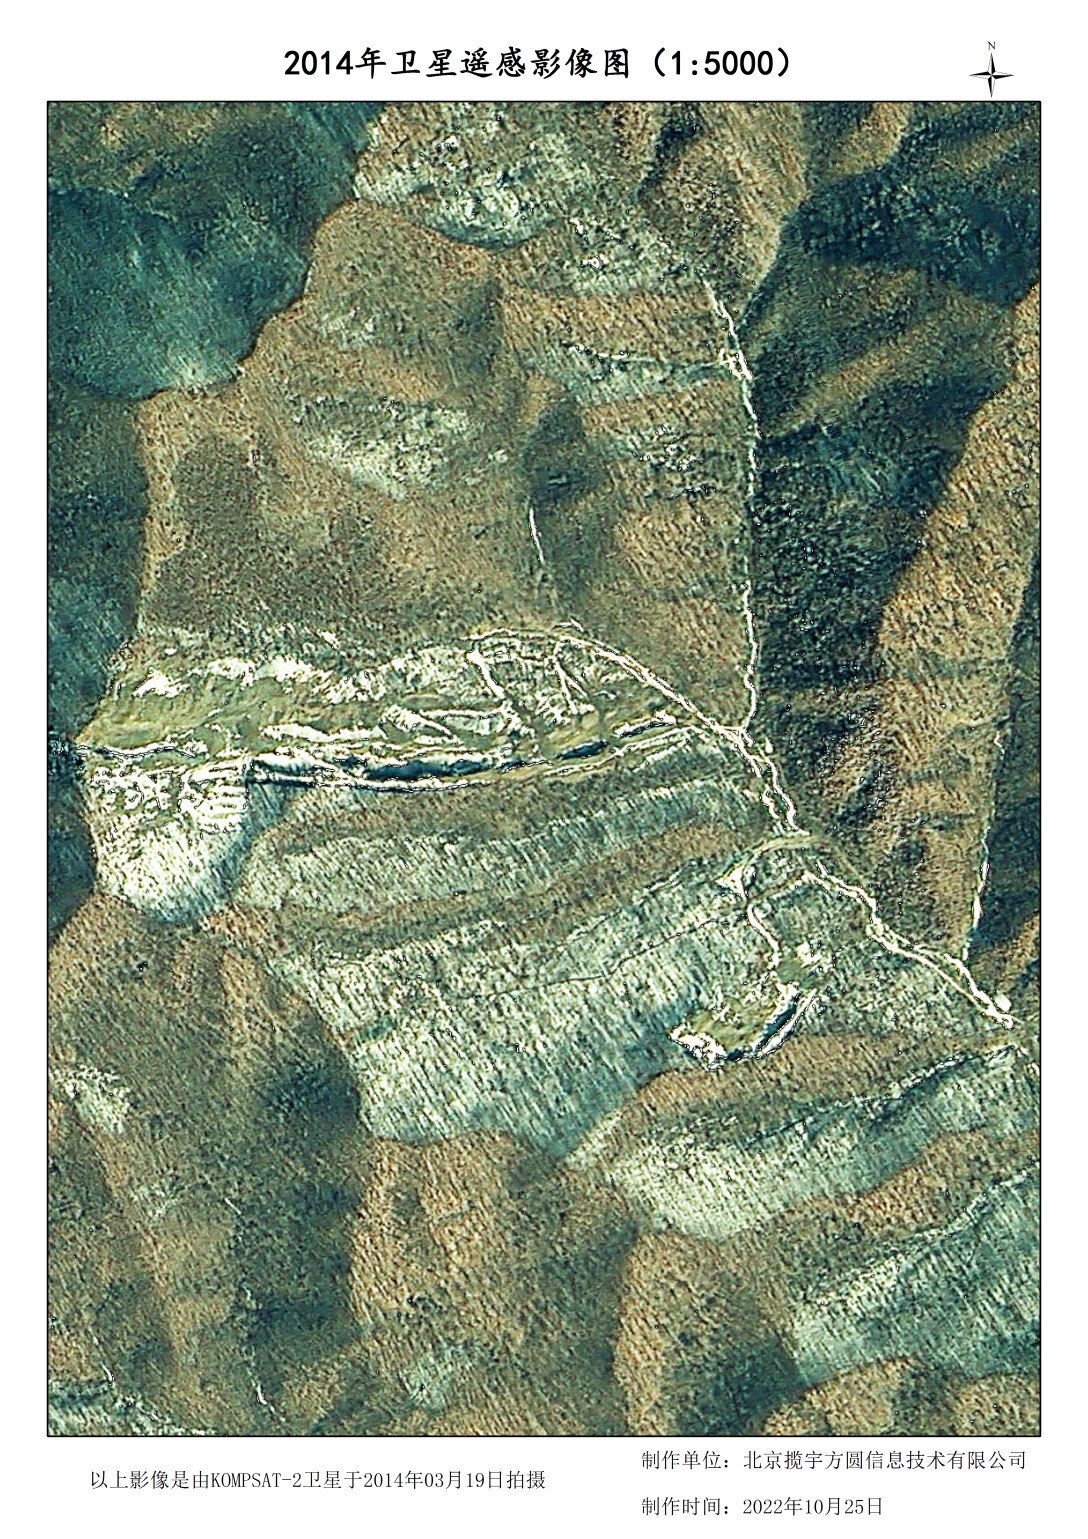 1米韩国卫星山林地貌破坏影